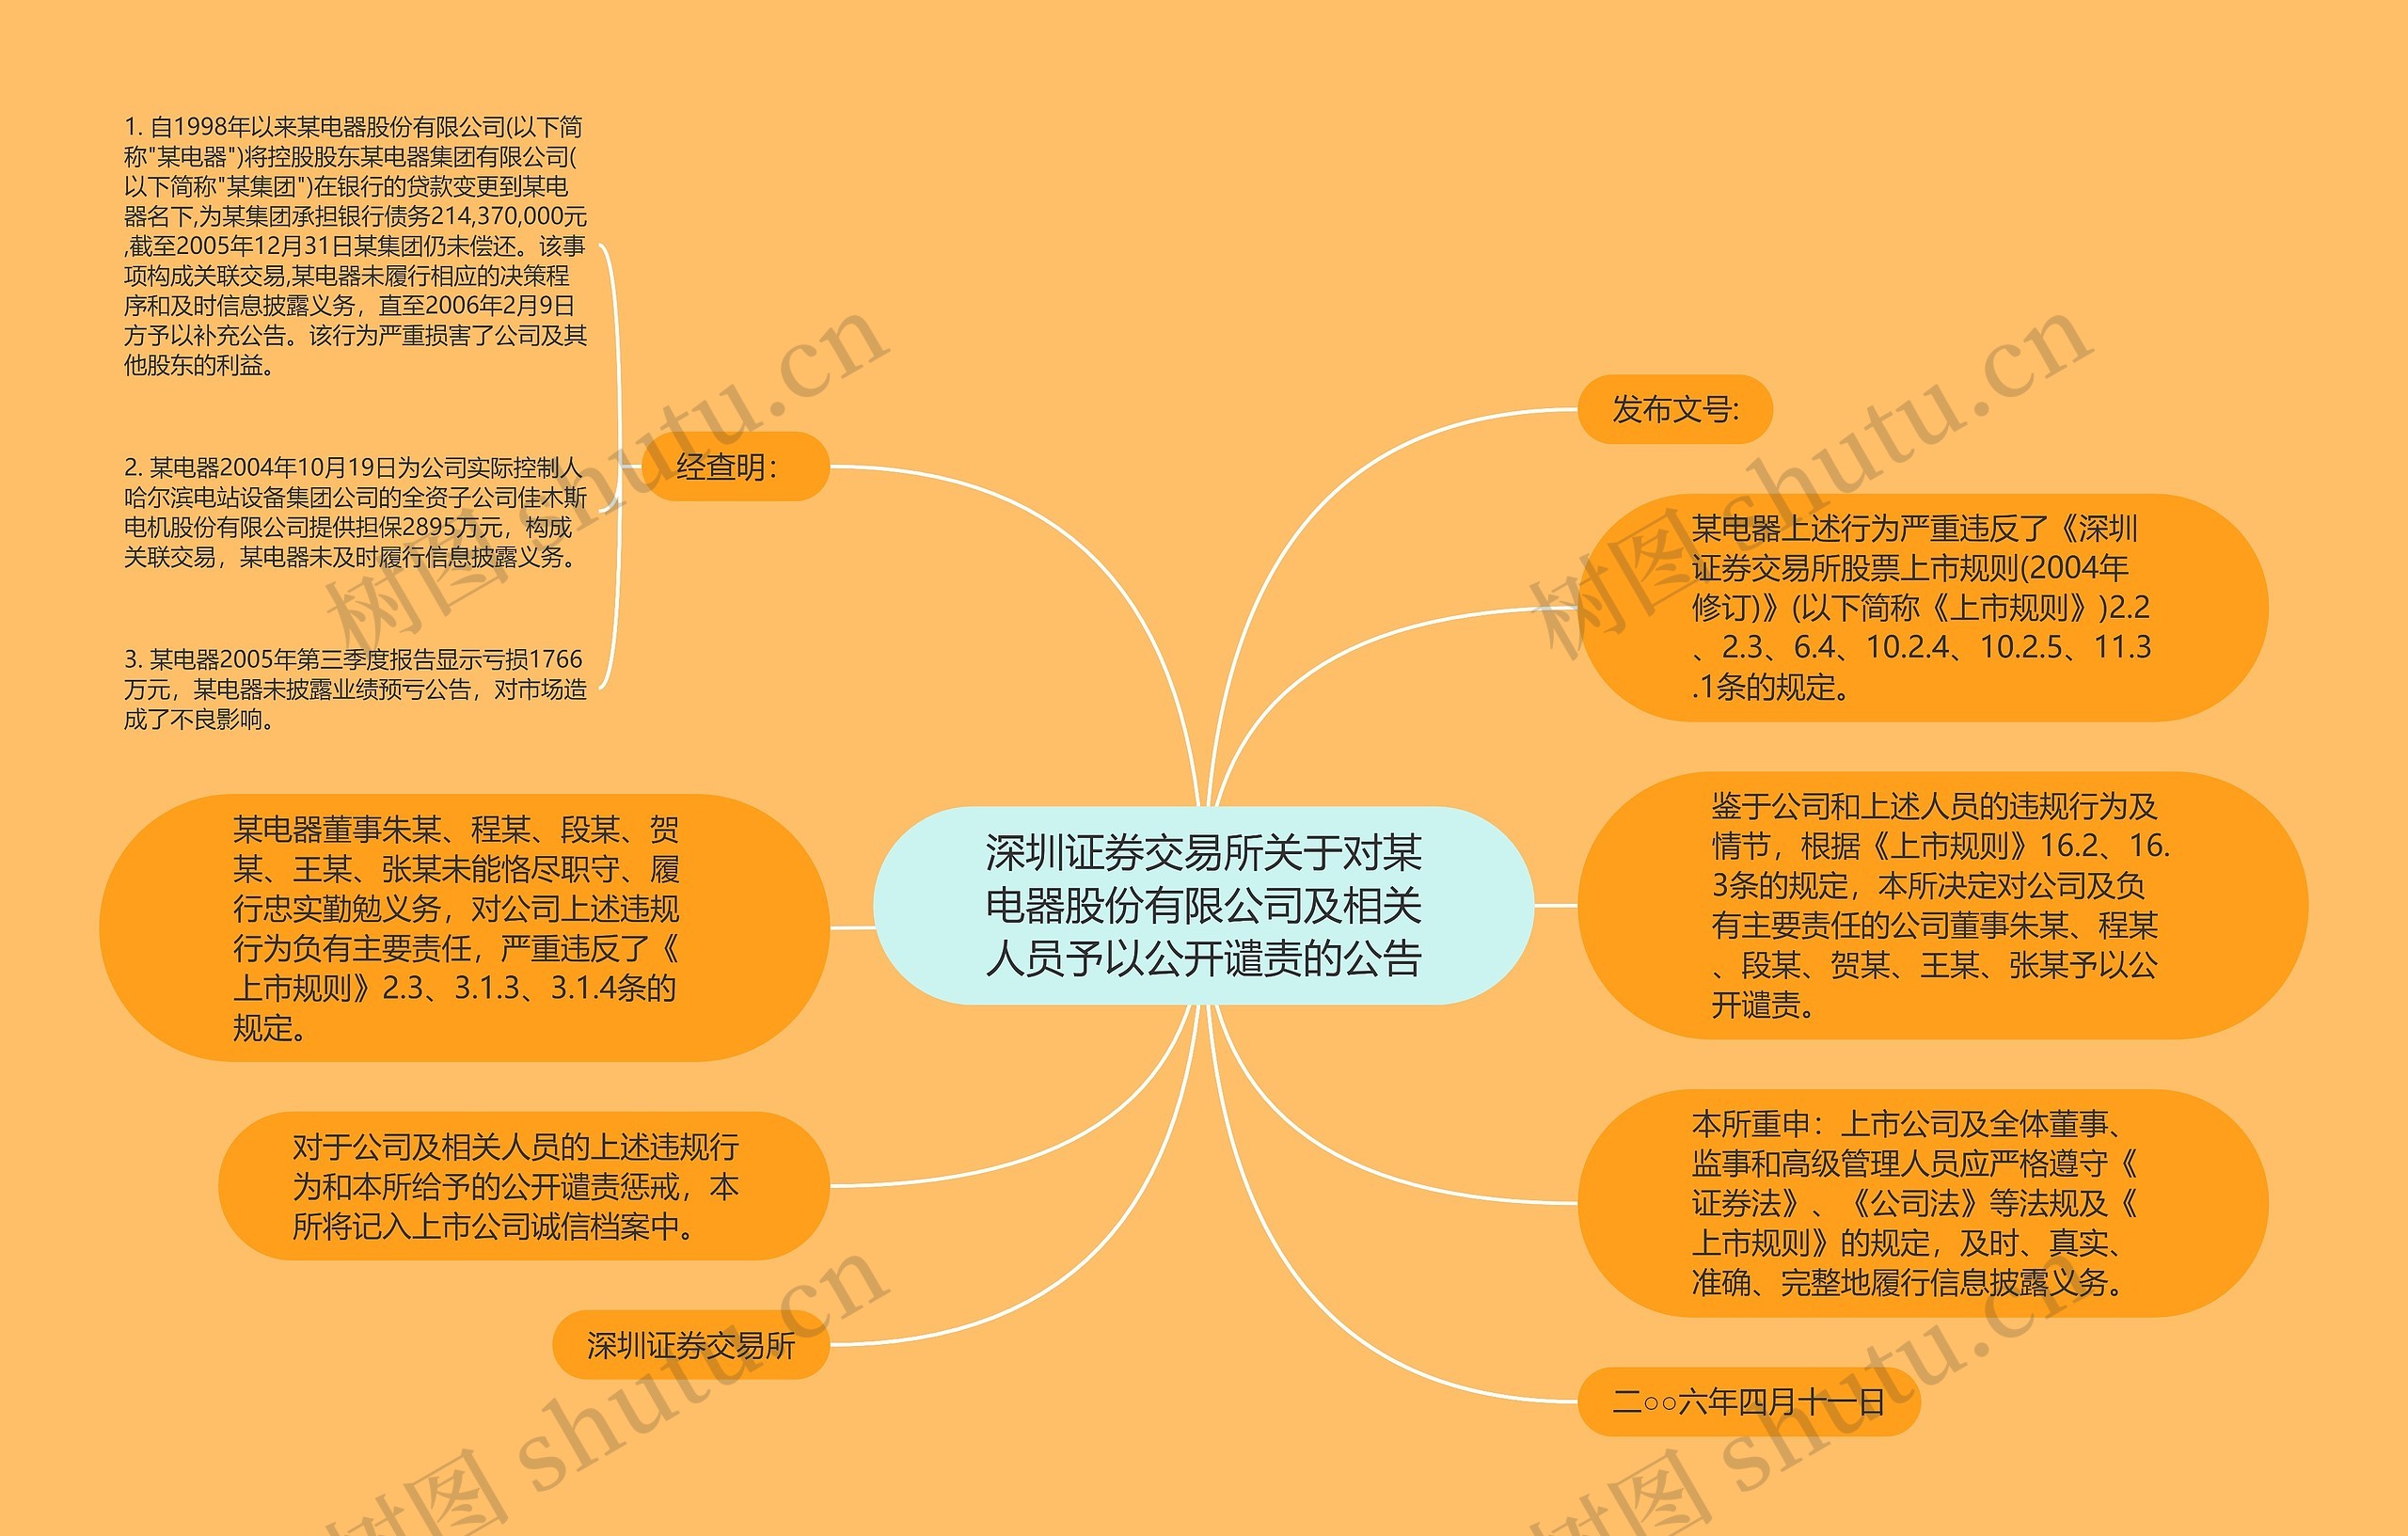 深圳证券交易所关于对某电器股份有限公司及相关人员予以公开谴责的公告思维导图